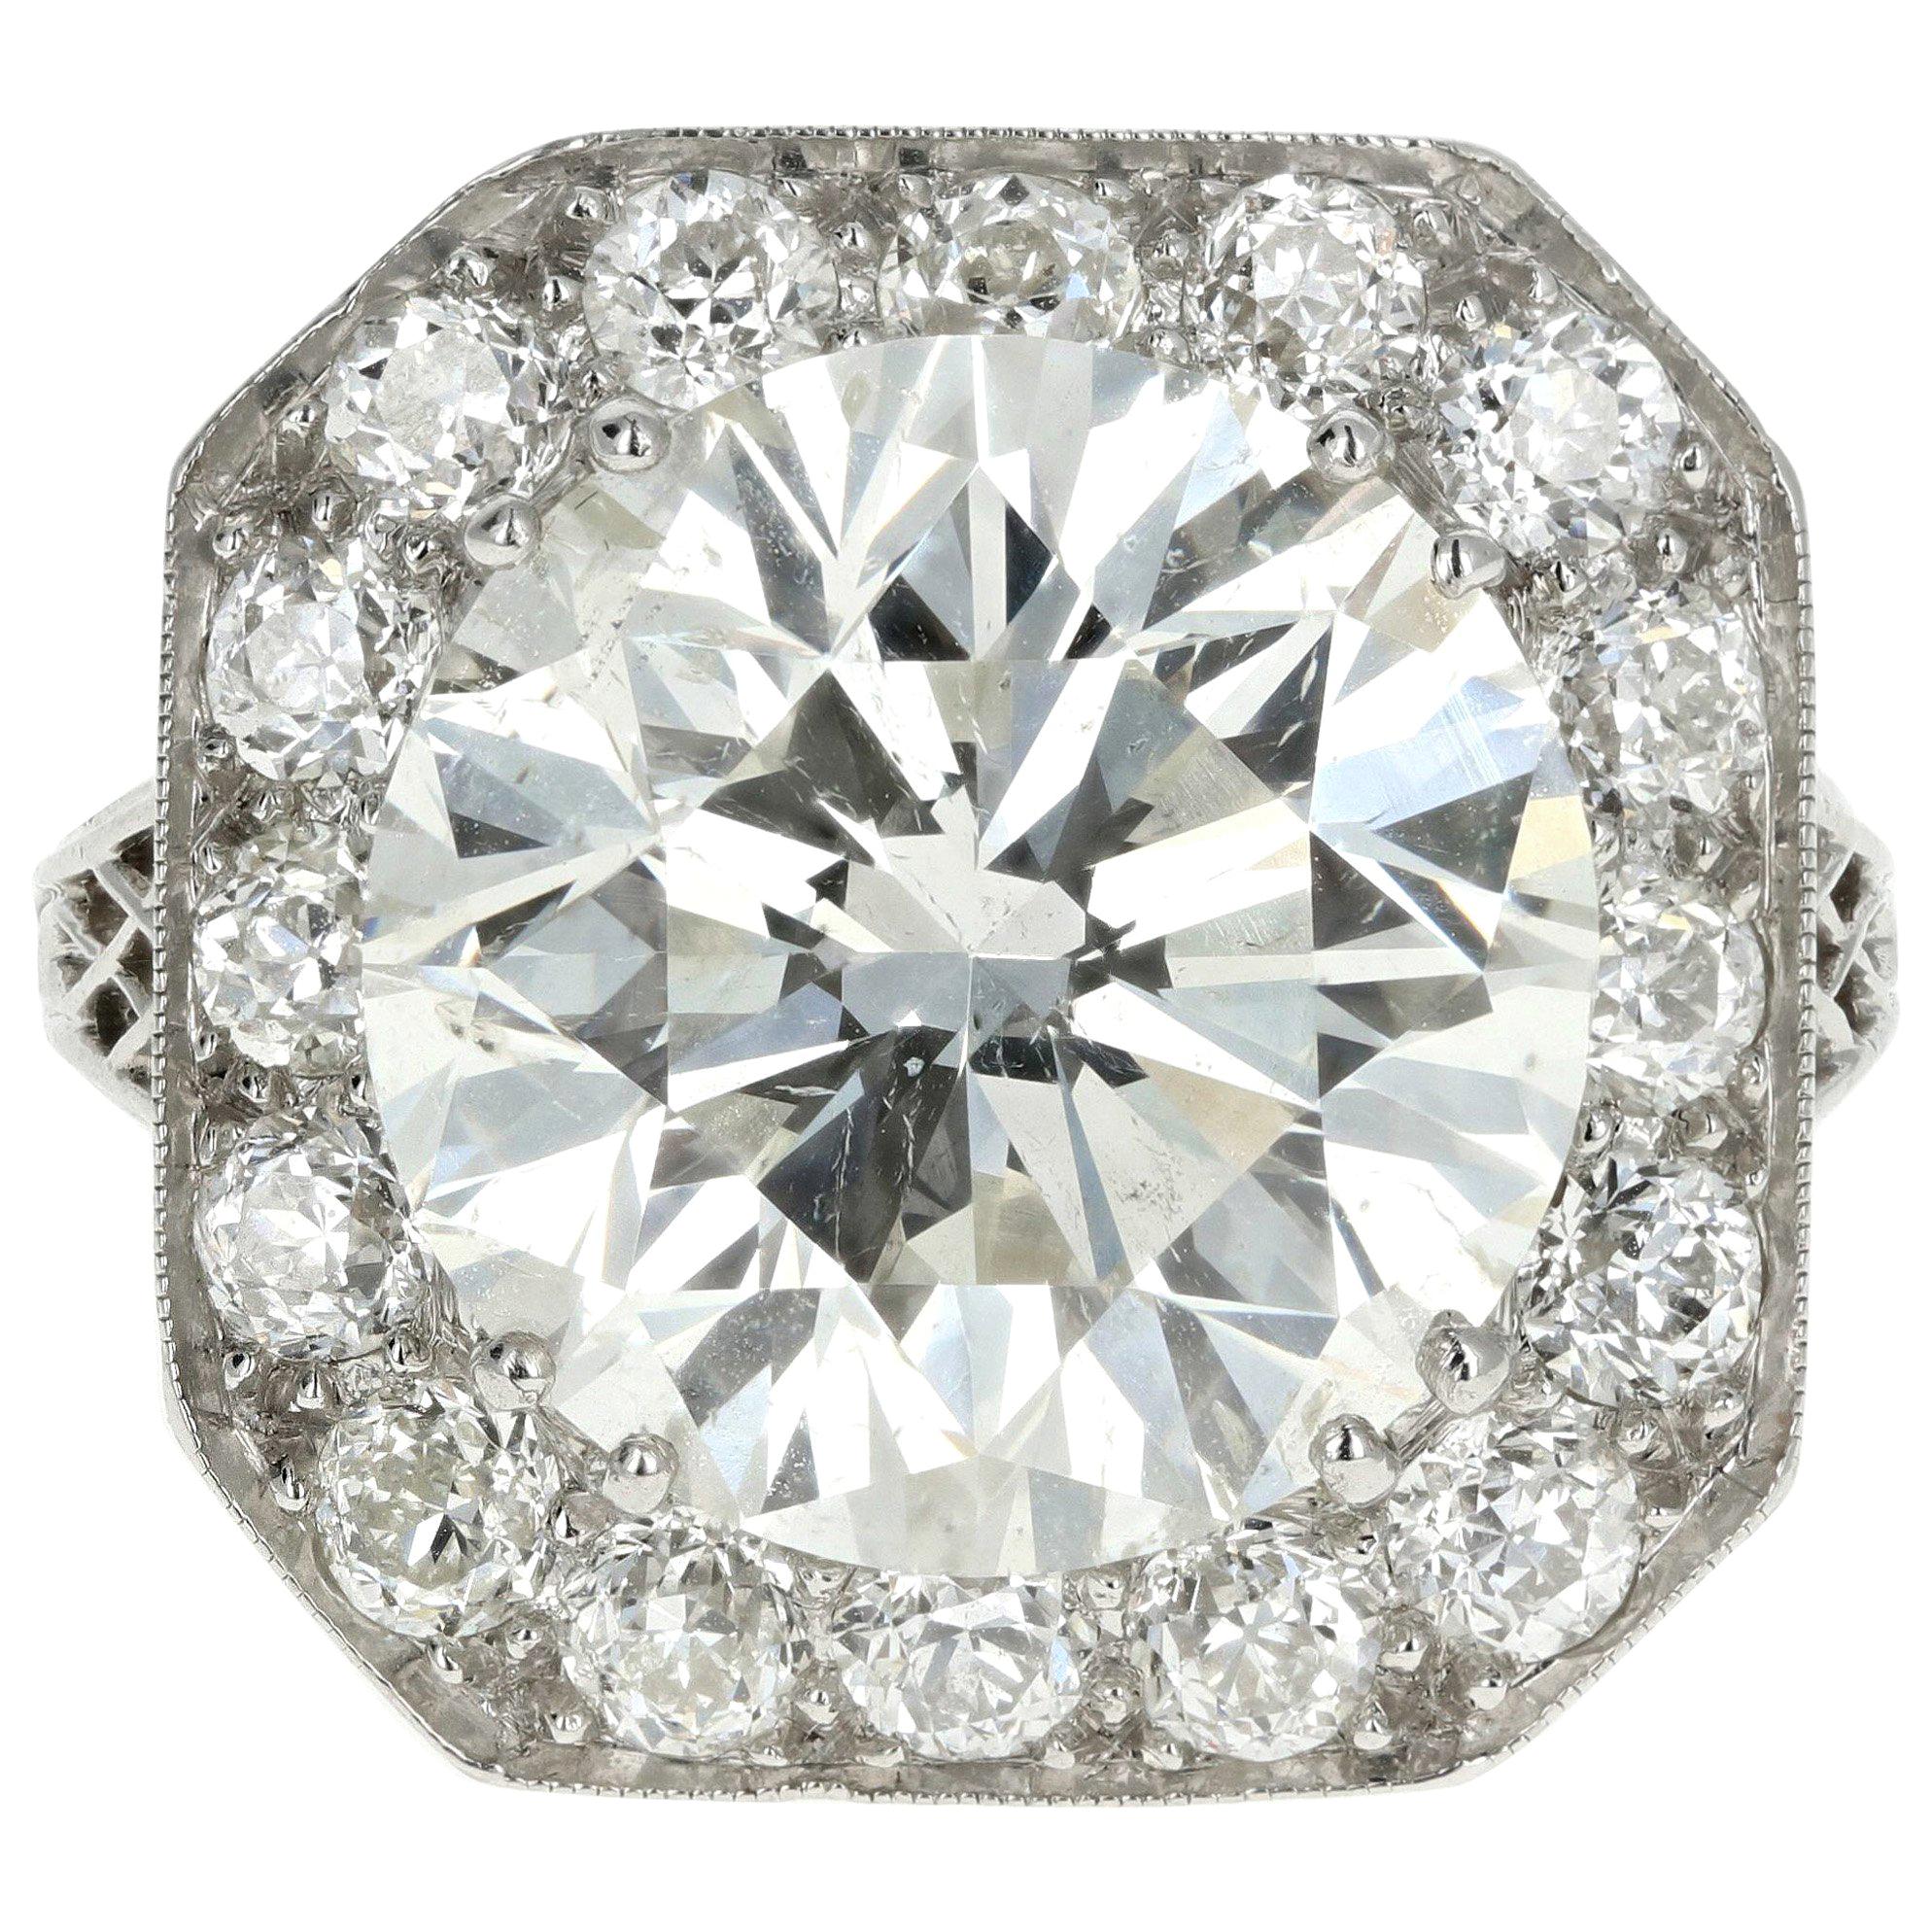 Platinum 10.05 Carat Round Brilliant Cut Diamond Engagement Ring EGL Certified